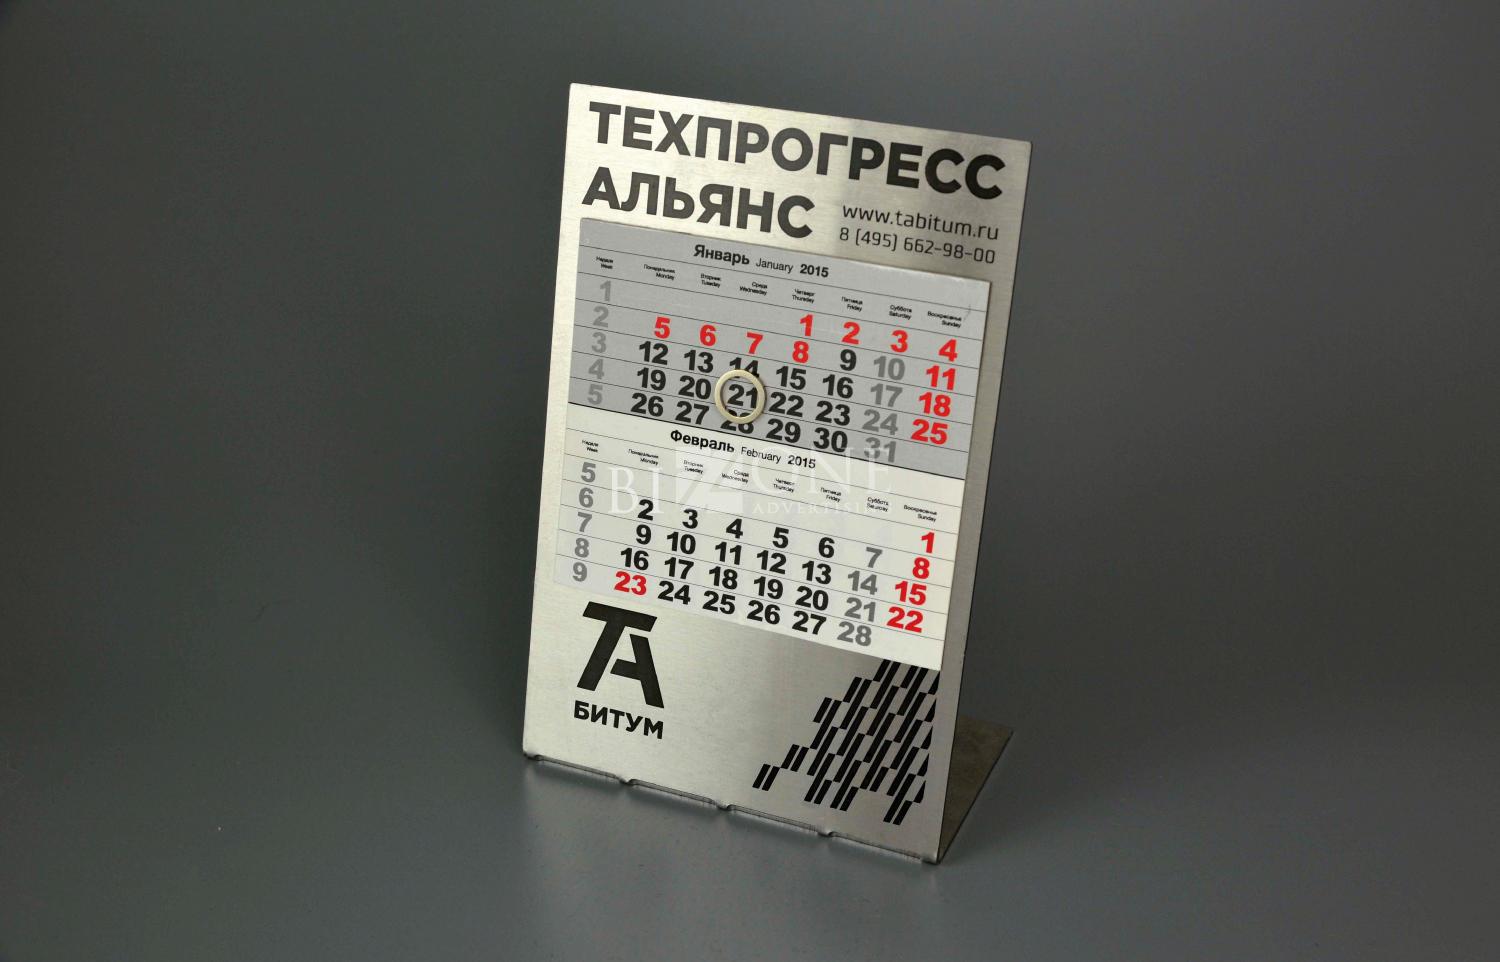 изготовление металлических календарей OK PRESS. Фотография календаря из металла с магнитным курсором